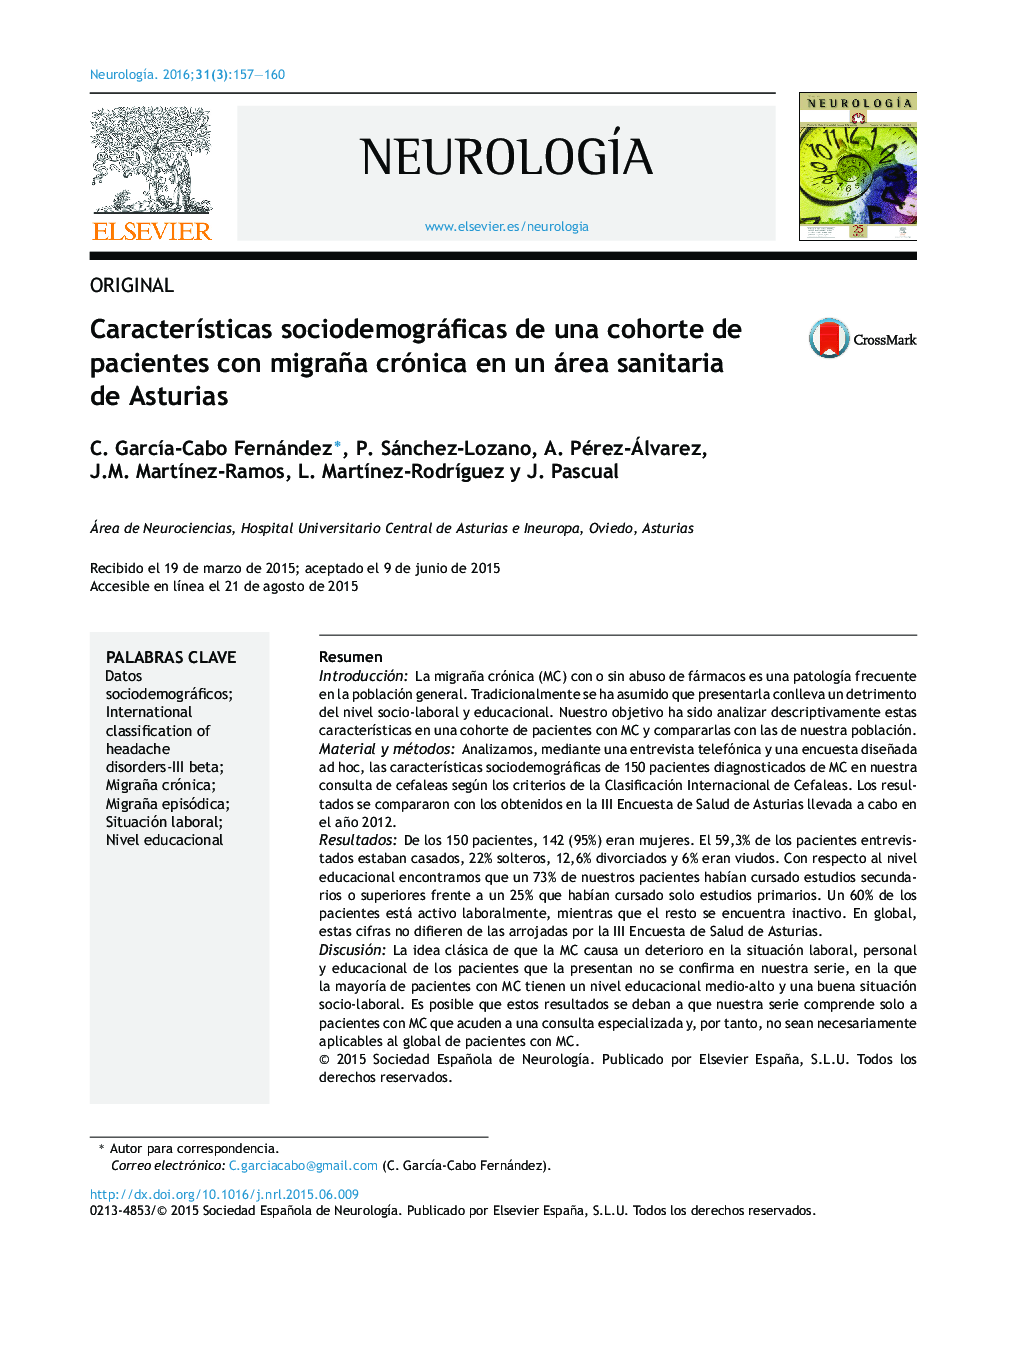 Características sociodemográficas de una cohorte de pacientes con migraña crónica en un área sanitaria de Asturias